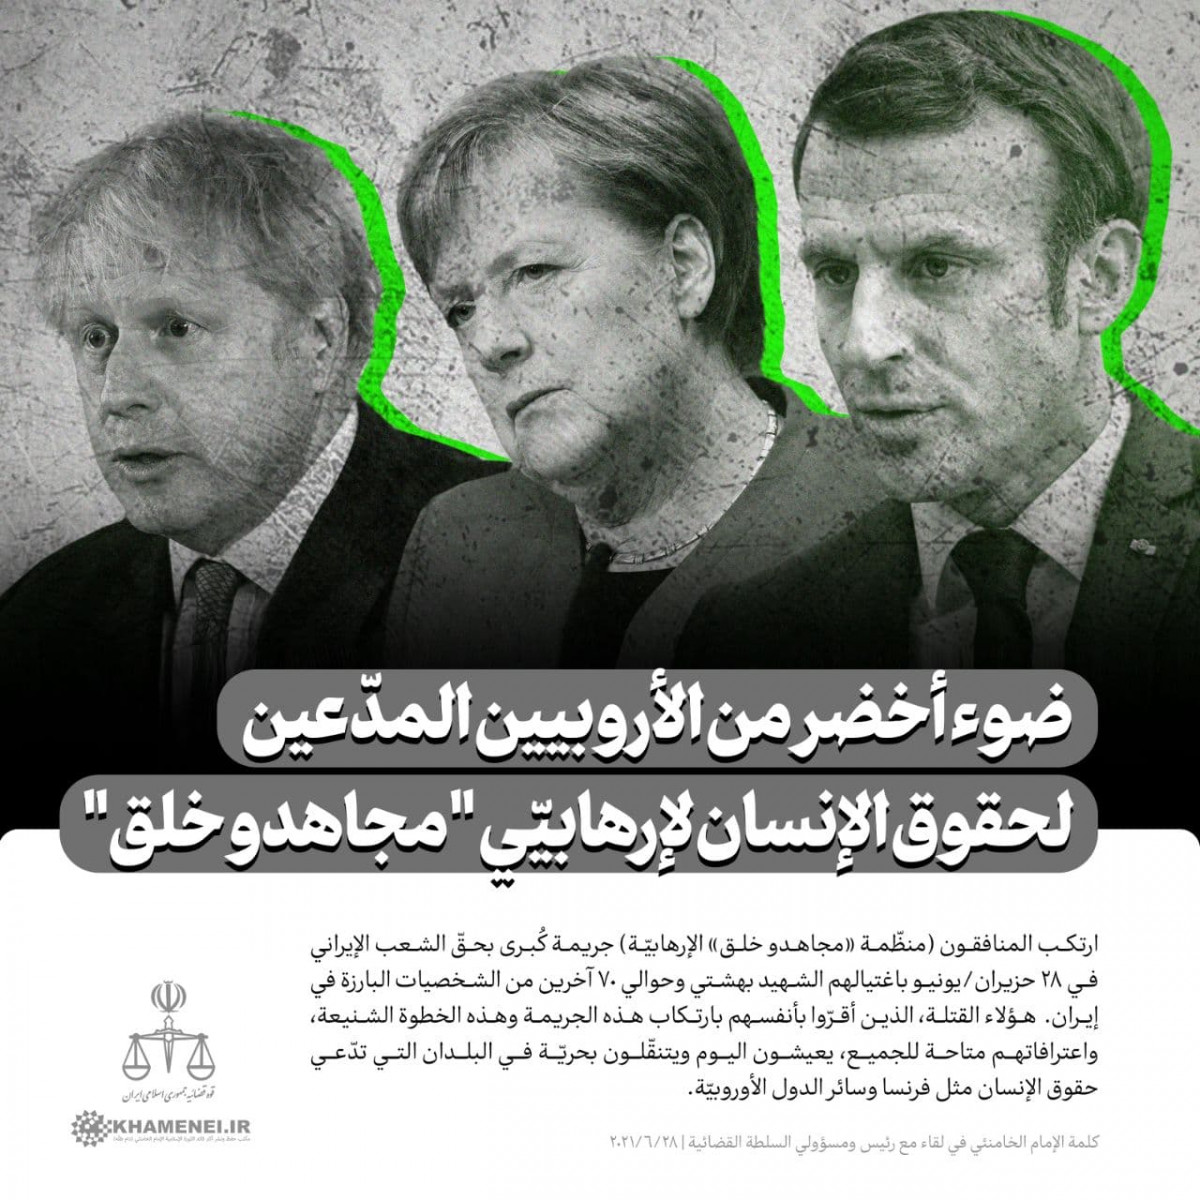 ضوء أخضر من الأروبيين المدّعين لحقوق الإنسان لإرهابيّى " مجاهدو خلق "